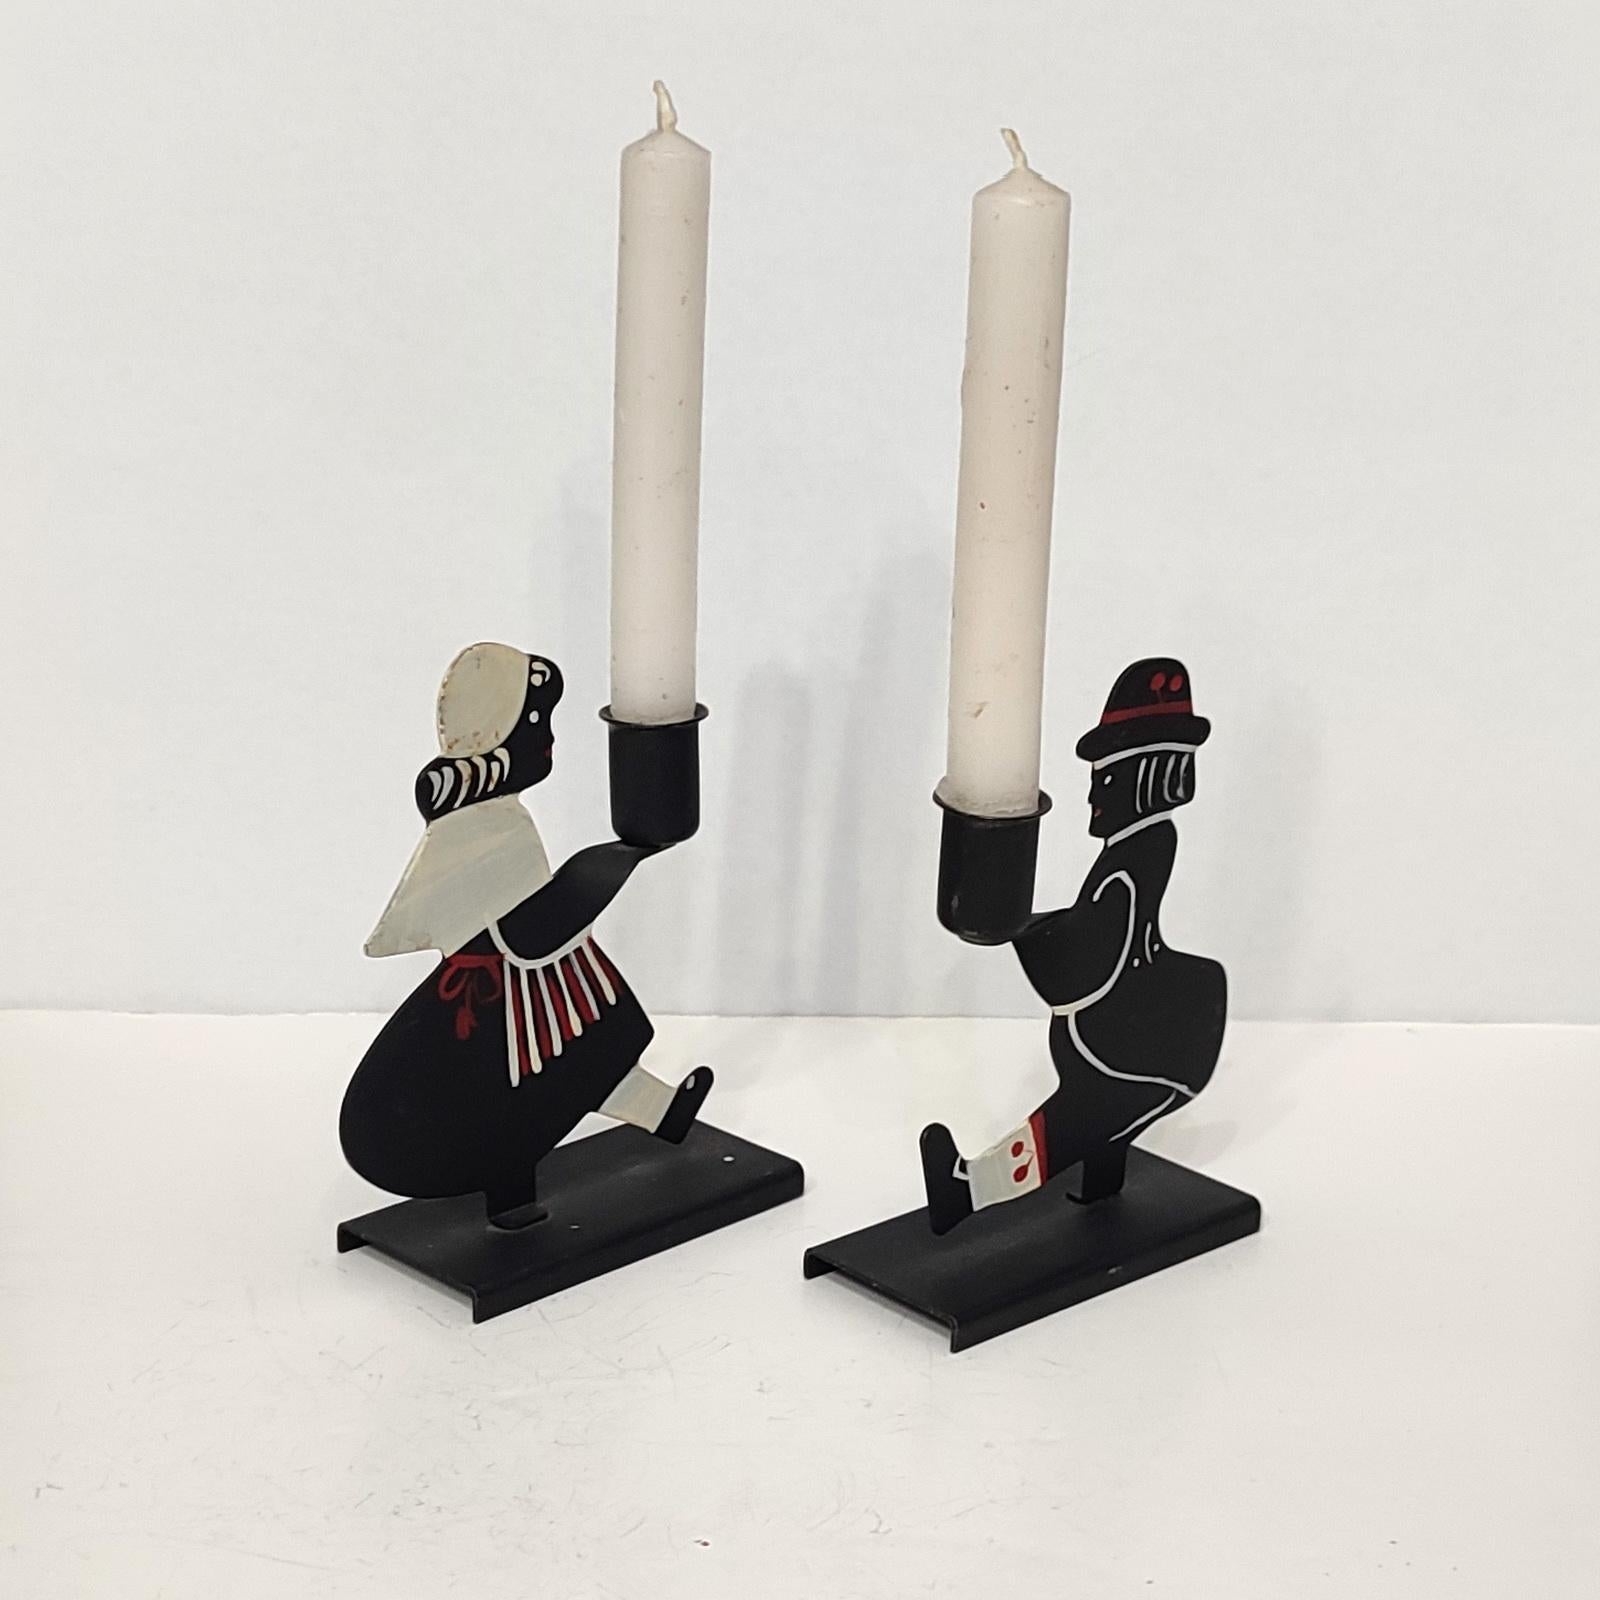 Hübsches Paar Kerzenständer mit der Darstellung eines Paares in Tracht, das jeweils einen Leuchter hält. Klein, für 1 cm Kerzen, perfekt für ein privates Abendessen für zwei. Jeweils auf der Unterseite markiert und datiert 1960.
Guter Gesamtzustand,